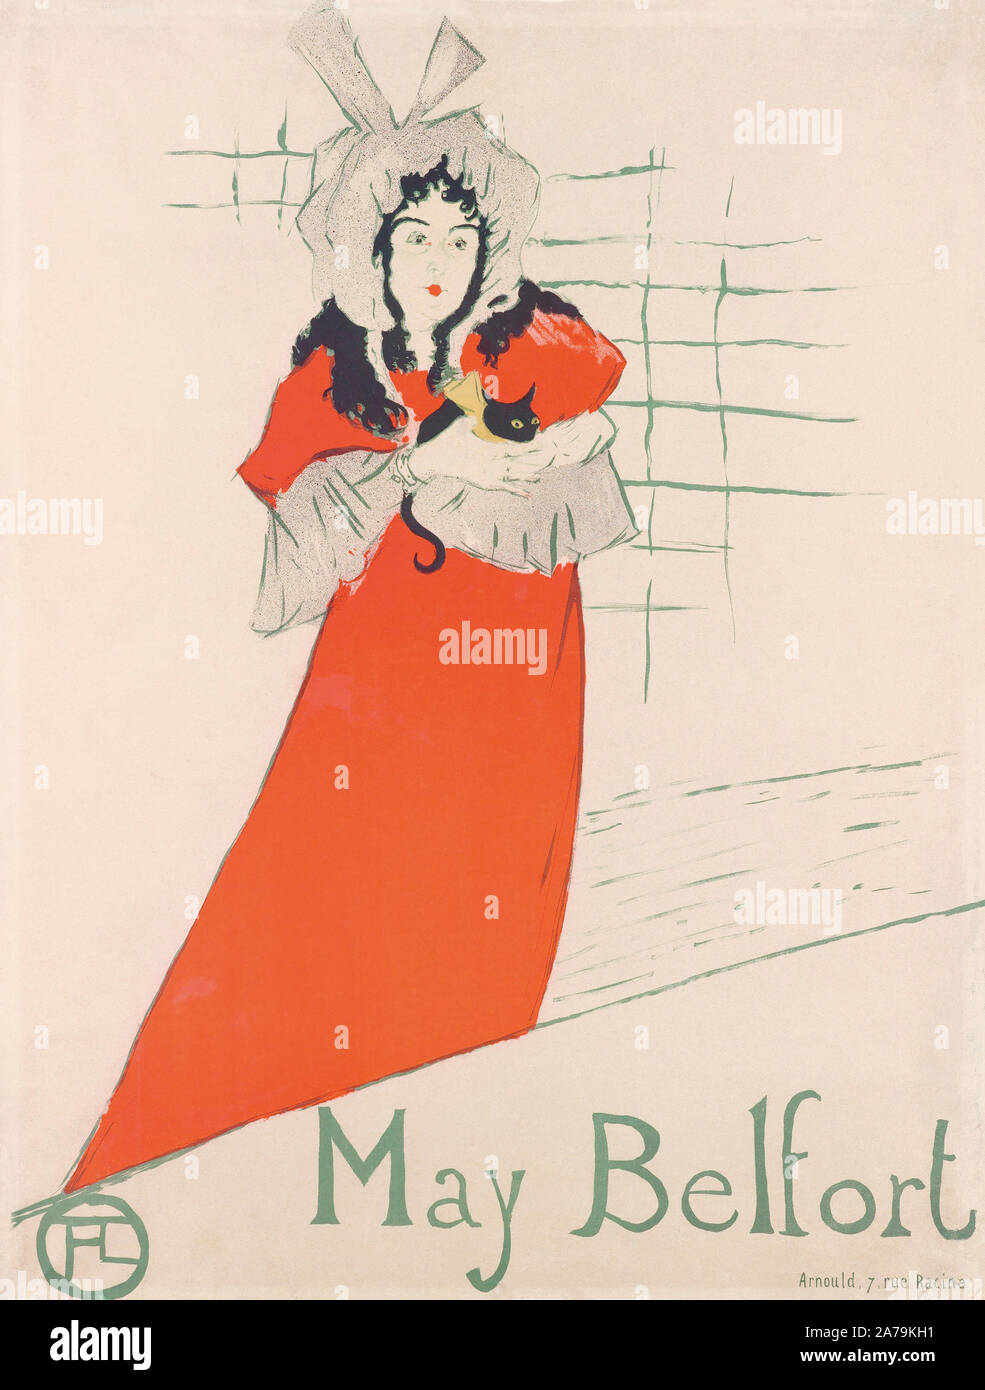 May Belfort, une affiche de Henri de Toulouse-Lautrec. May Belfort (de son vrai nom) était un Egan mai chanteuse irlandaise qui a effectué dans les boîtes de nuit parisienne durant les années 1890. Elle a été un modèle préféré de Toulouse-Lautrec. Banque D'Images